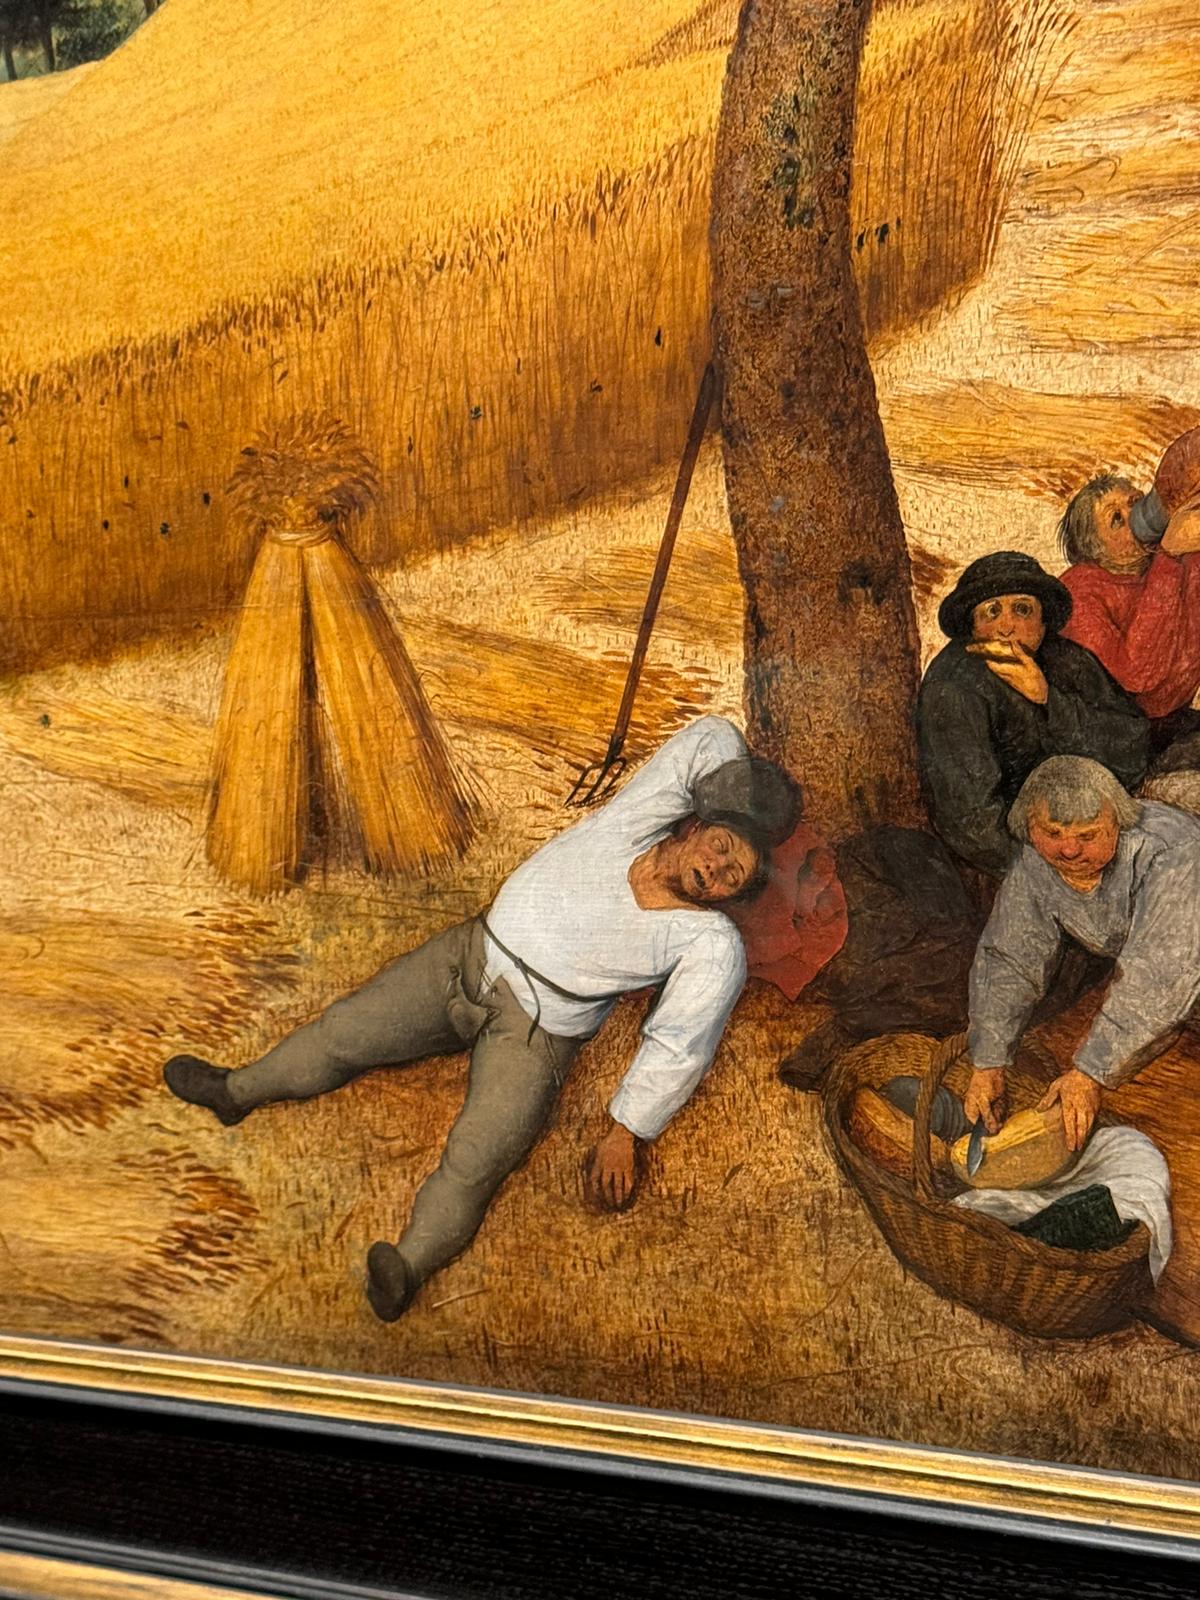 Pieter Bruegel the Elder’s “The Harvesters”